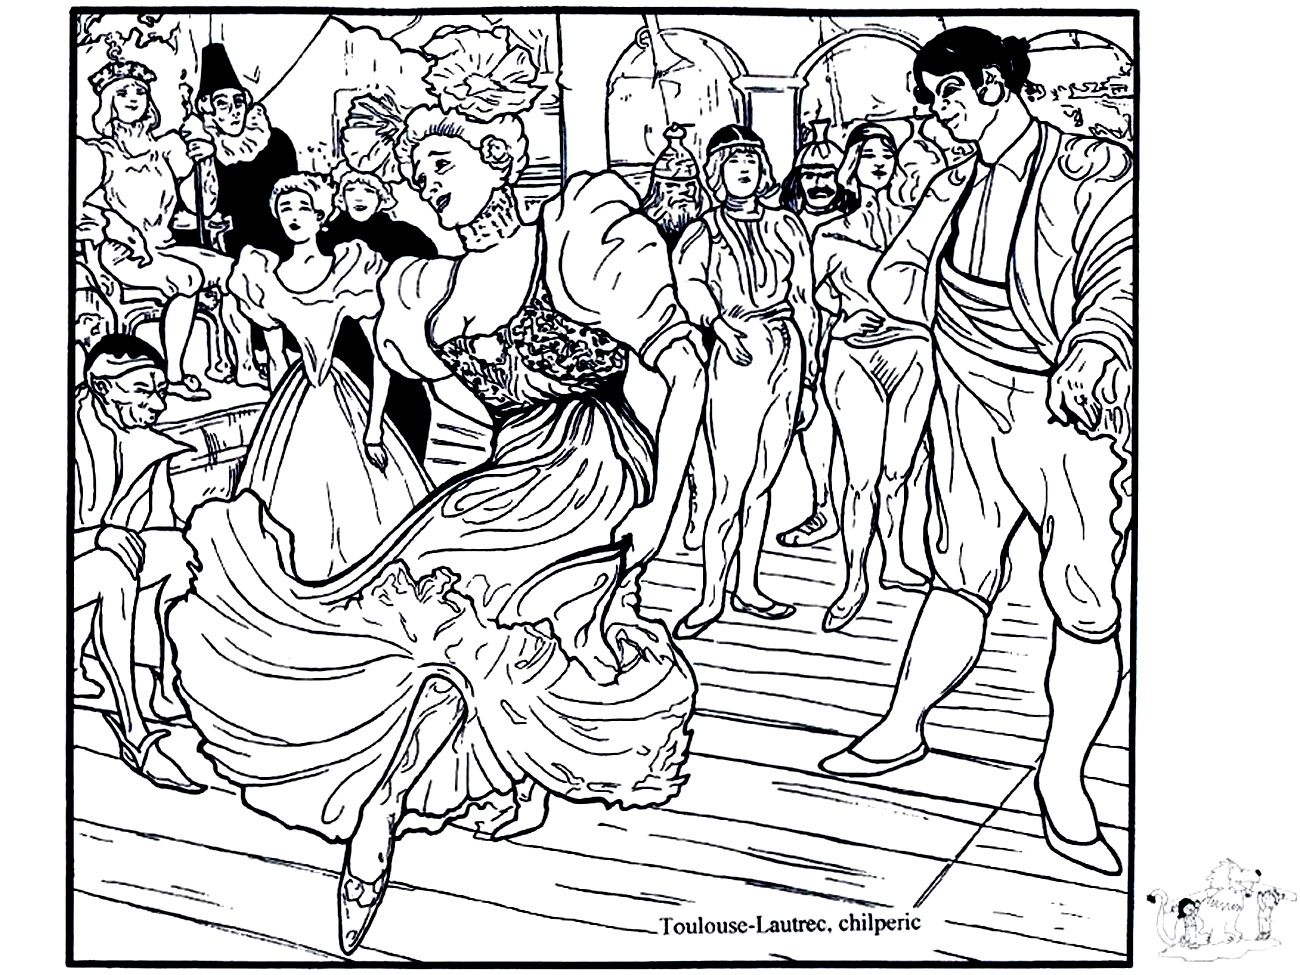 Henri de Toulouse-Lautrec - Marcelle Lender bailando el bolero en 'Chilperic' (1895-1896). Precioso colorido inspirado en el cuadro de Henri de Toulouse-Lautrec 'Marcelle Lender bailando el bolero en 'Chilperic'' (1895-1896).
